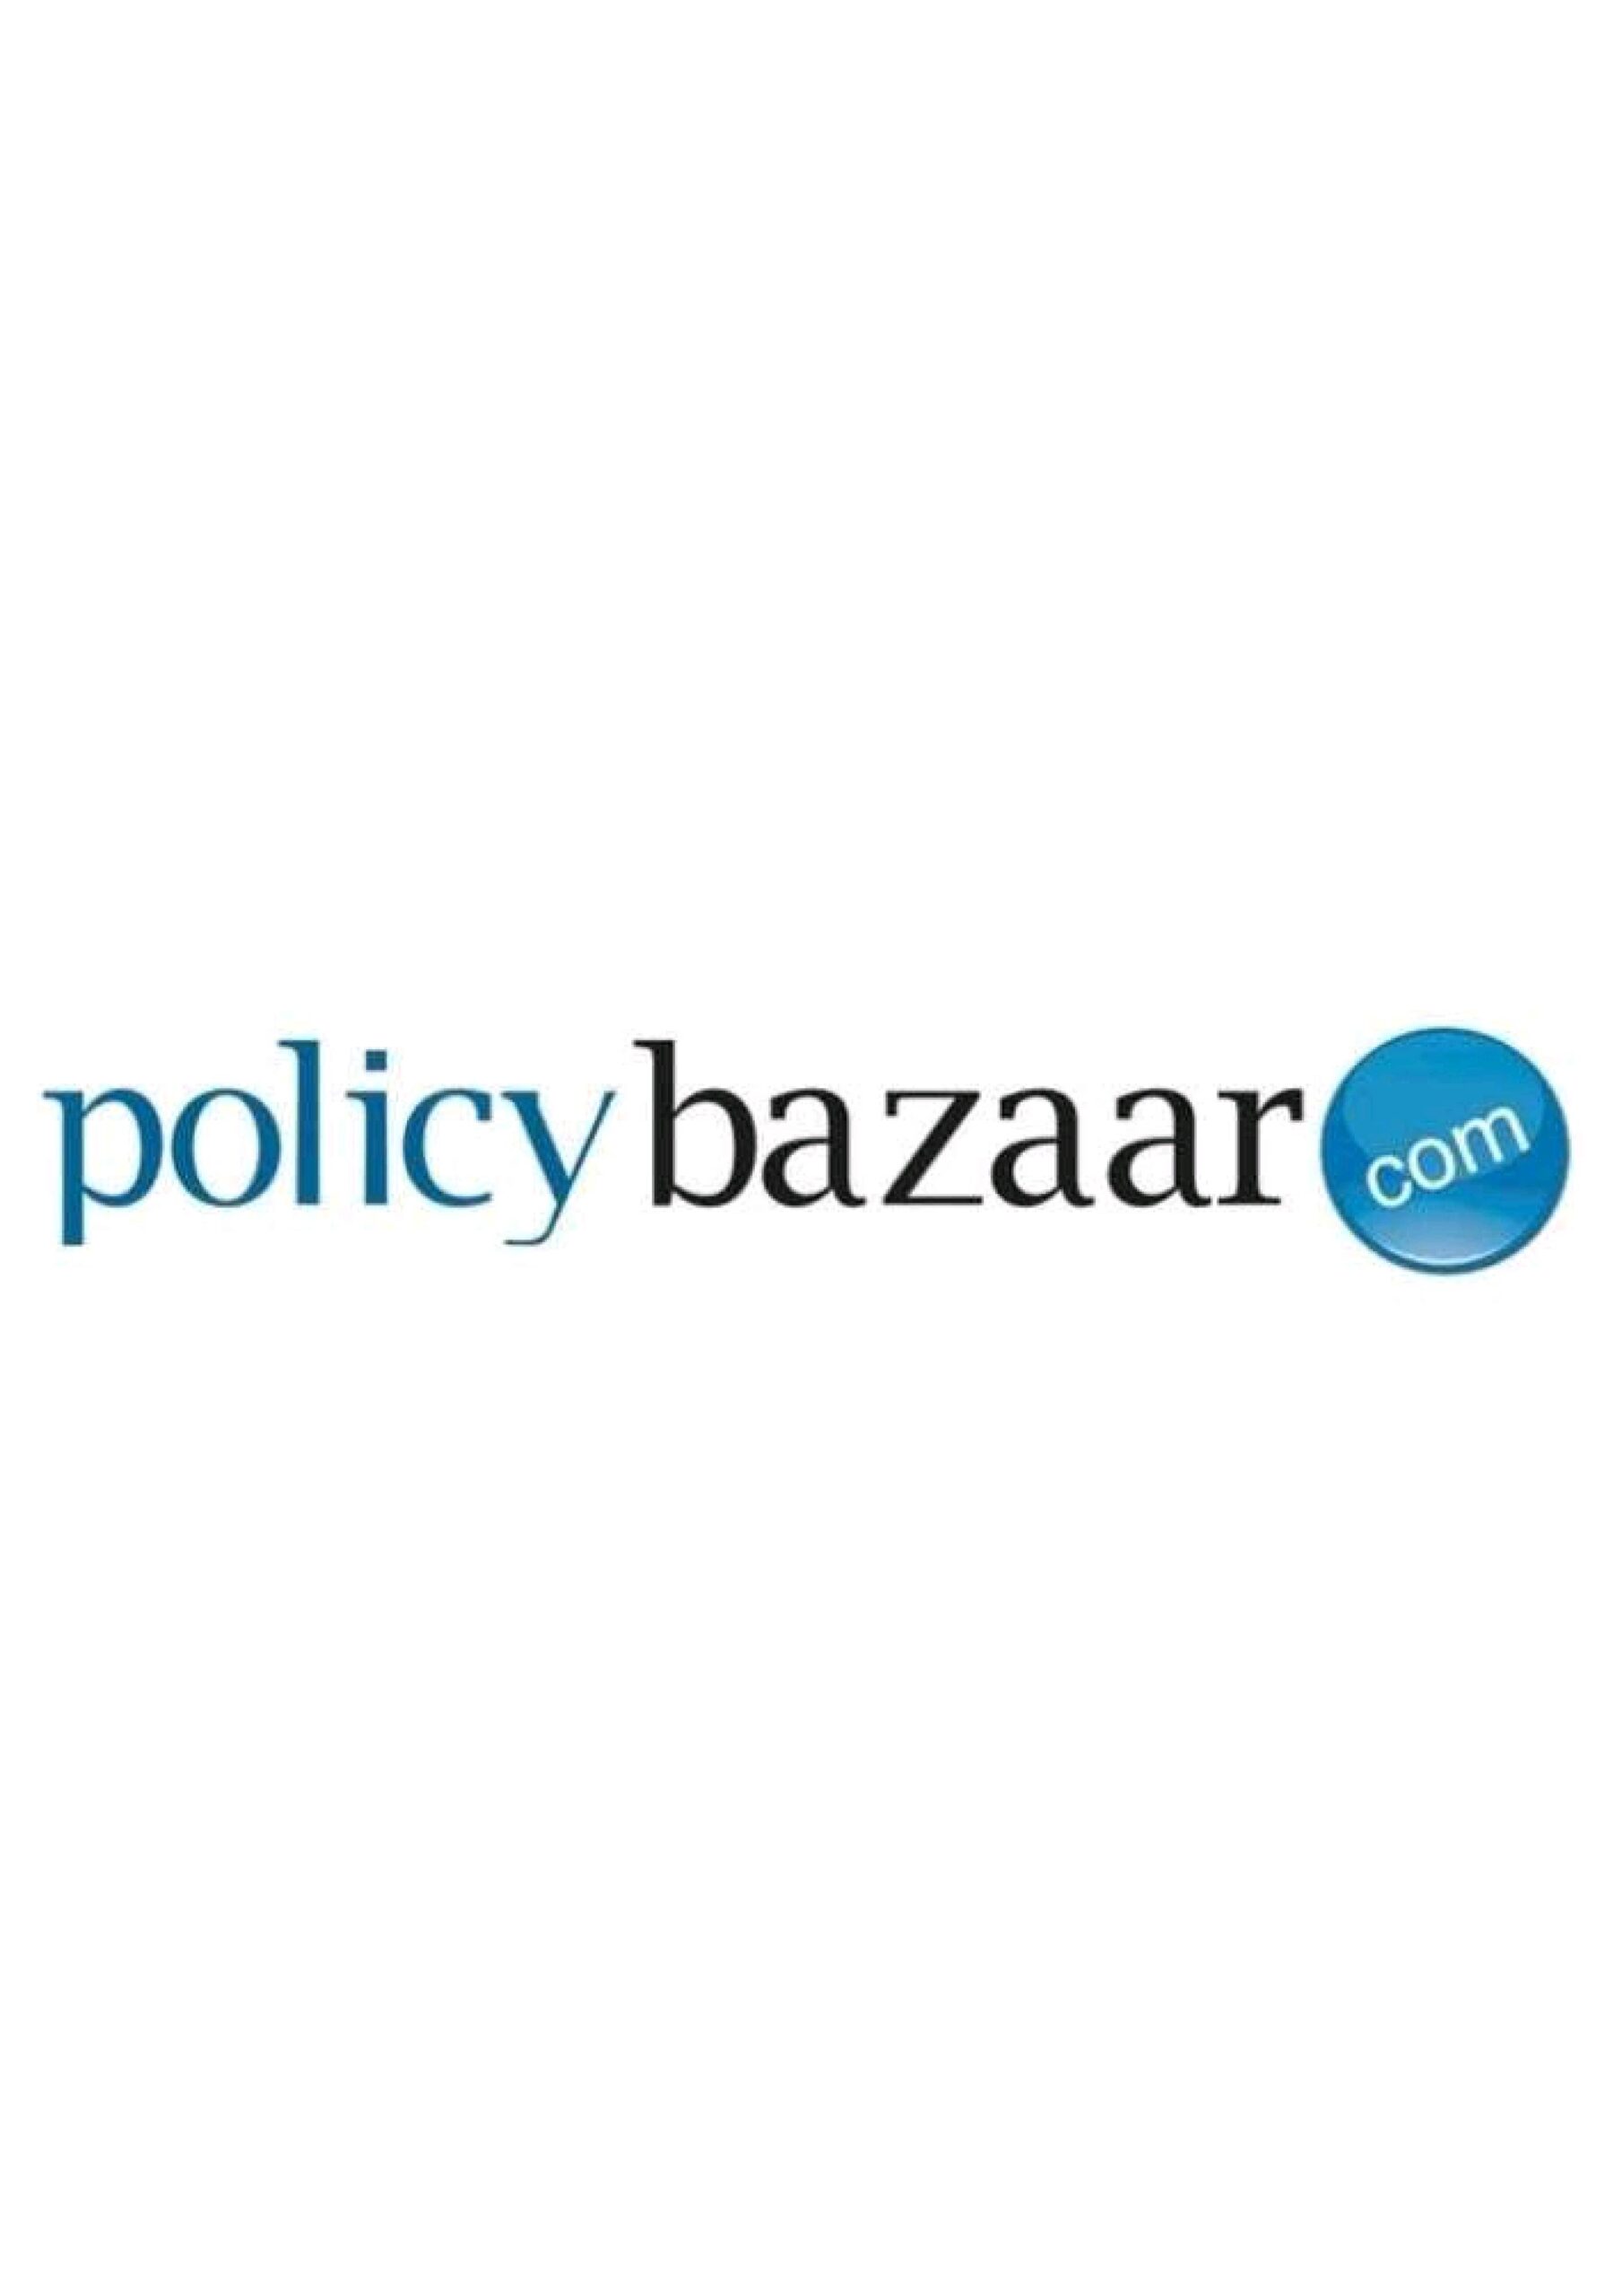 PB Fintech Policy Bazaar